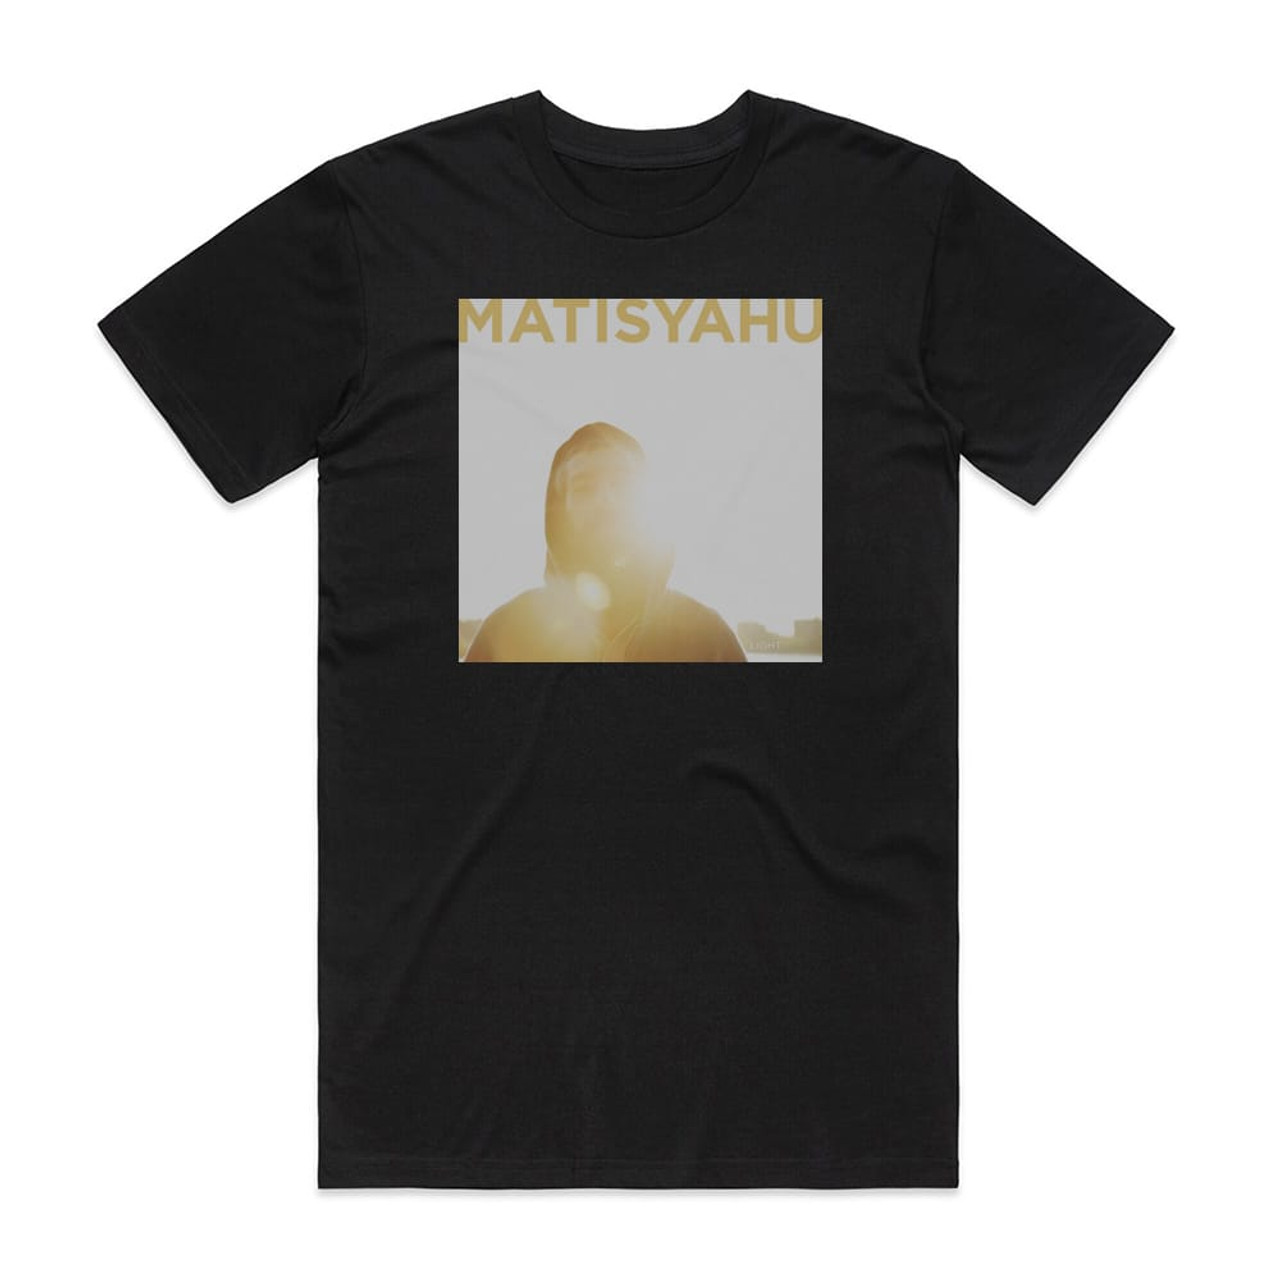 Matisyahu Light Album T-Shirt Black